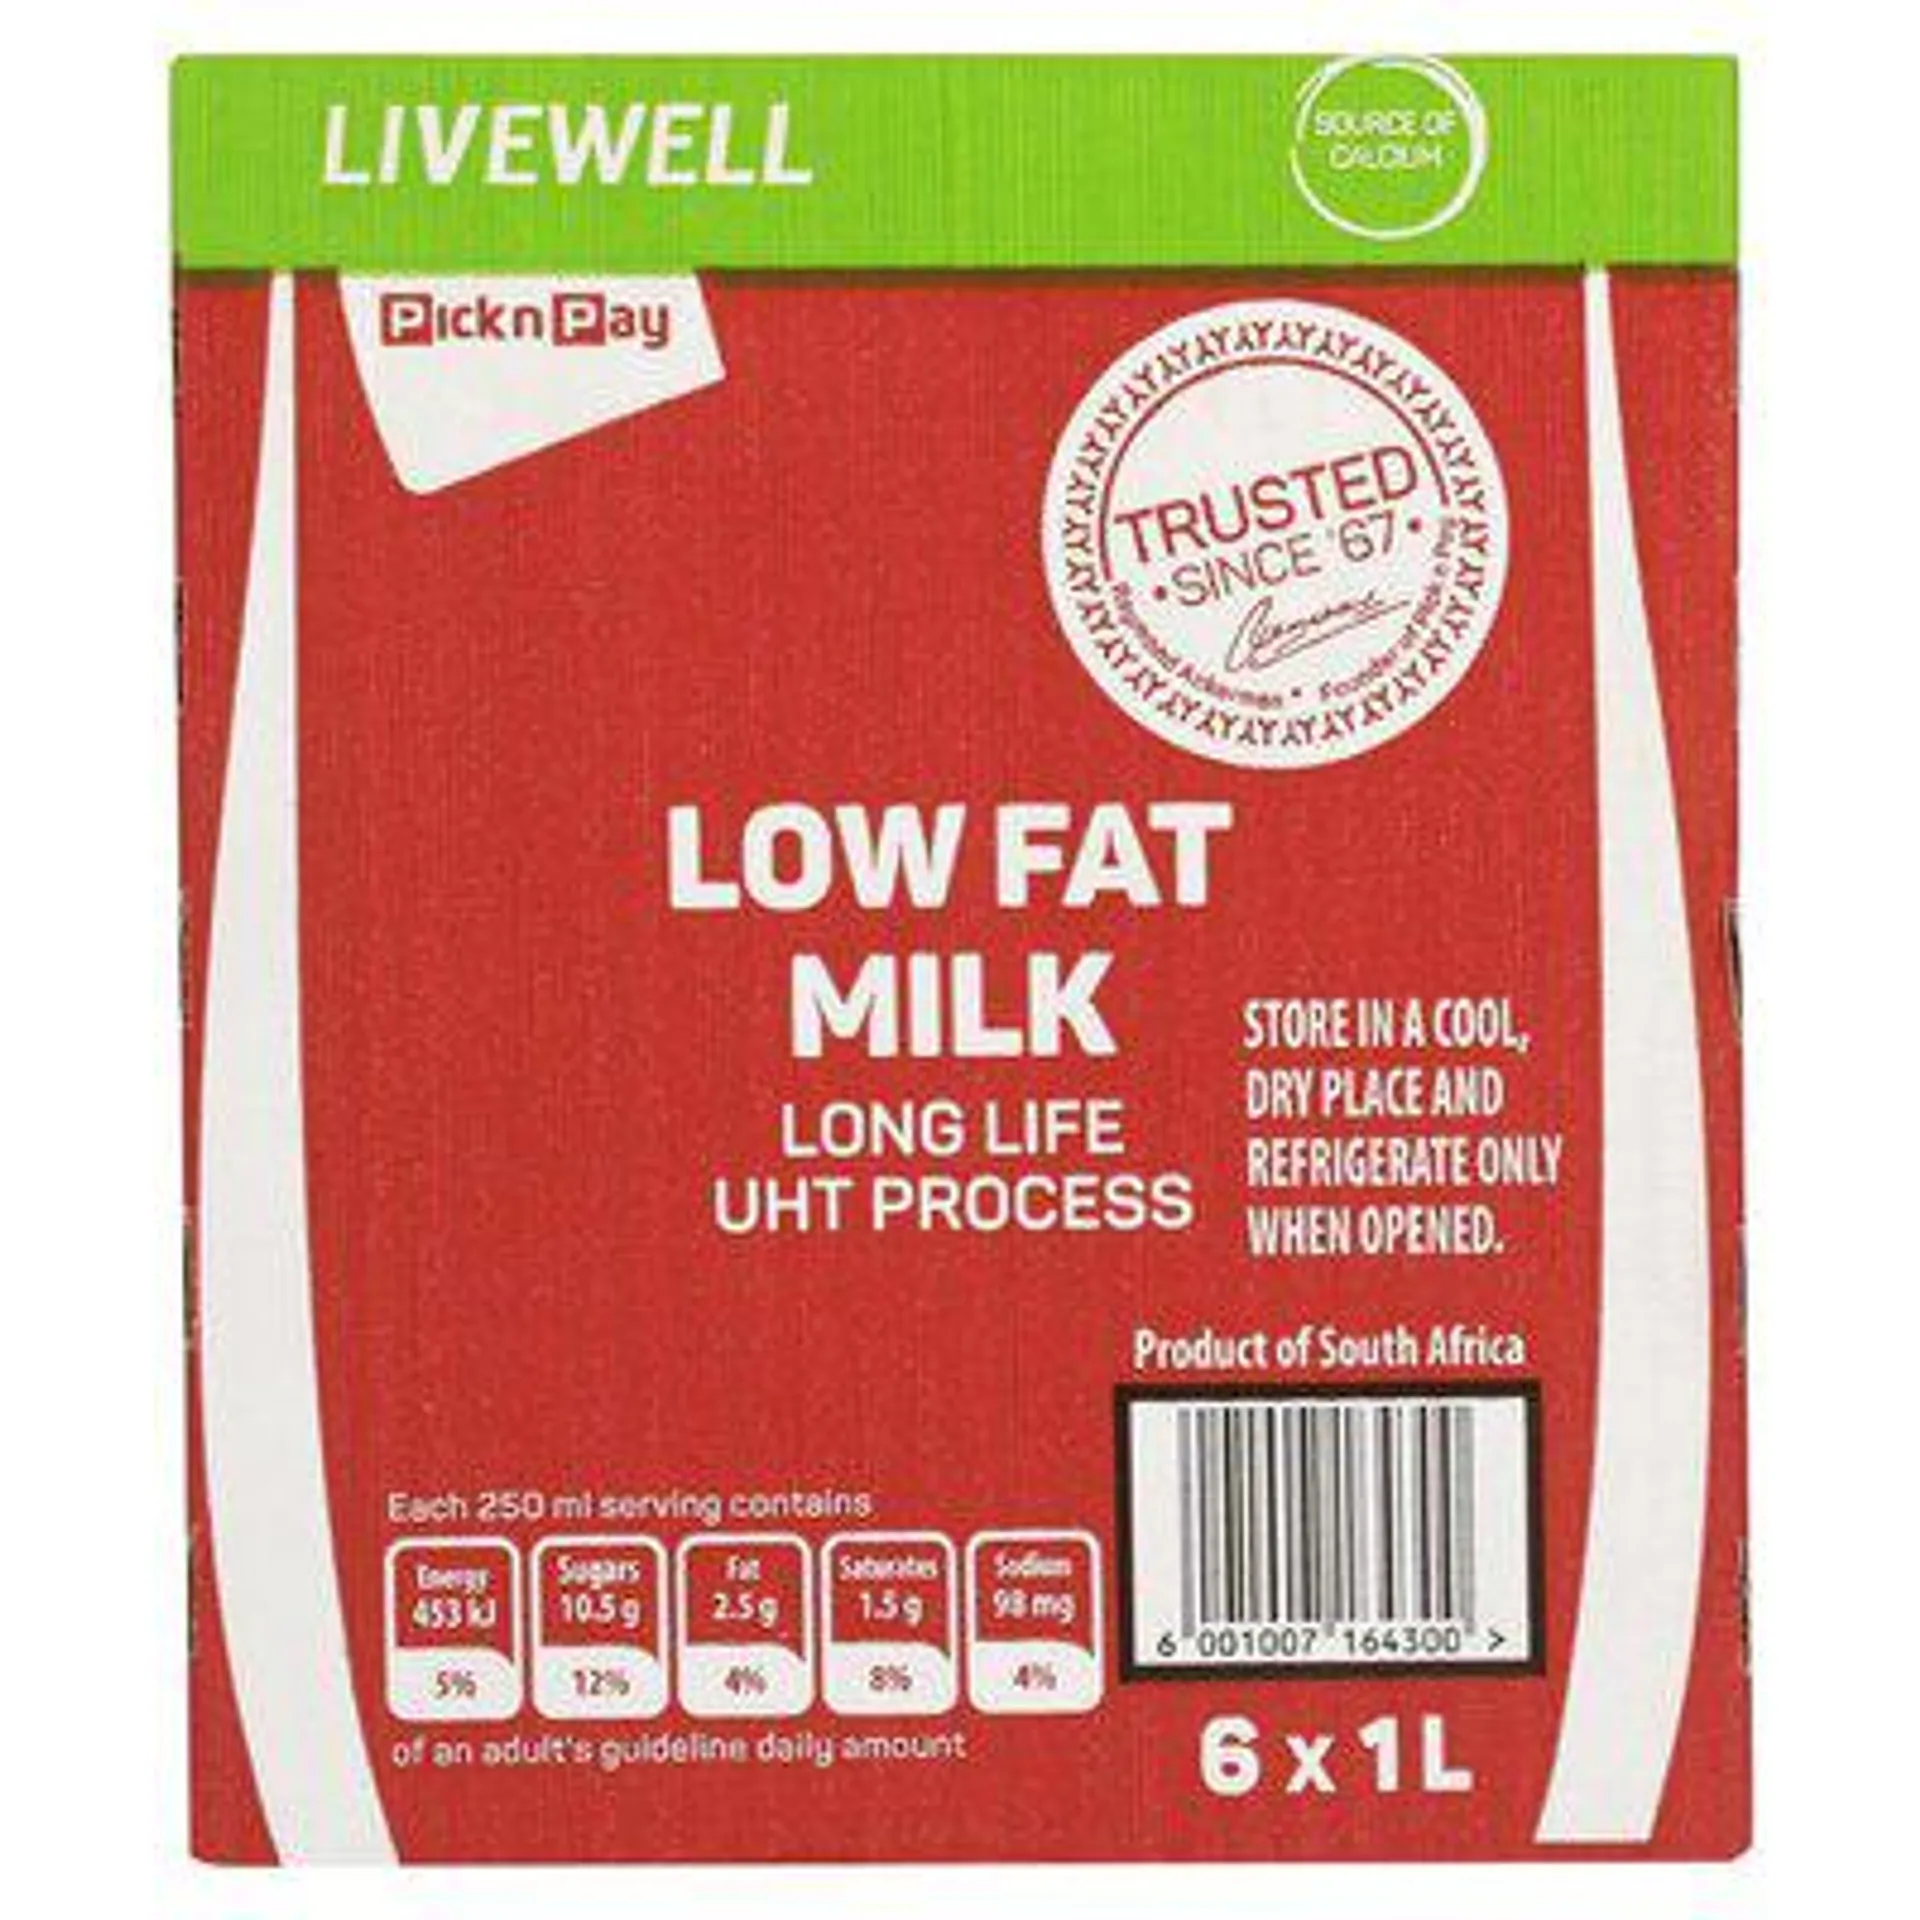 PnP Uht Low Fat Milk 1l x 6